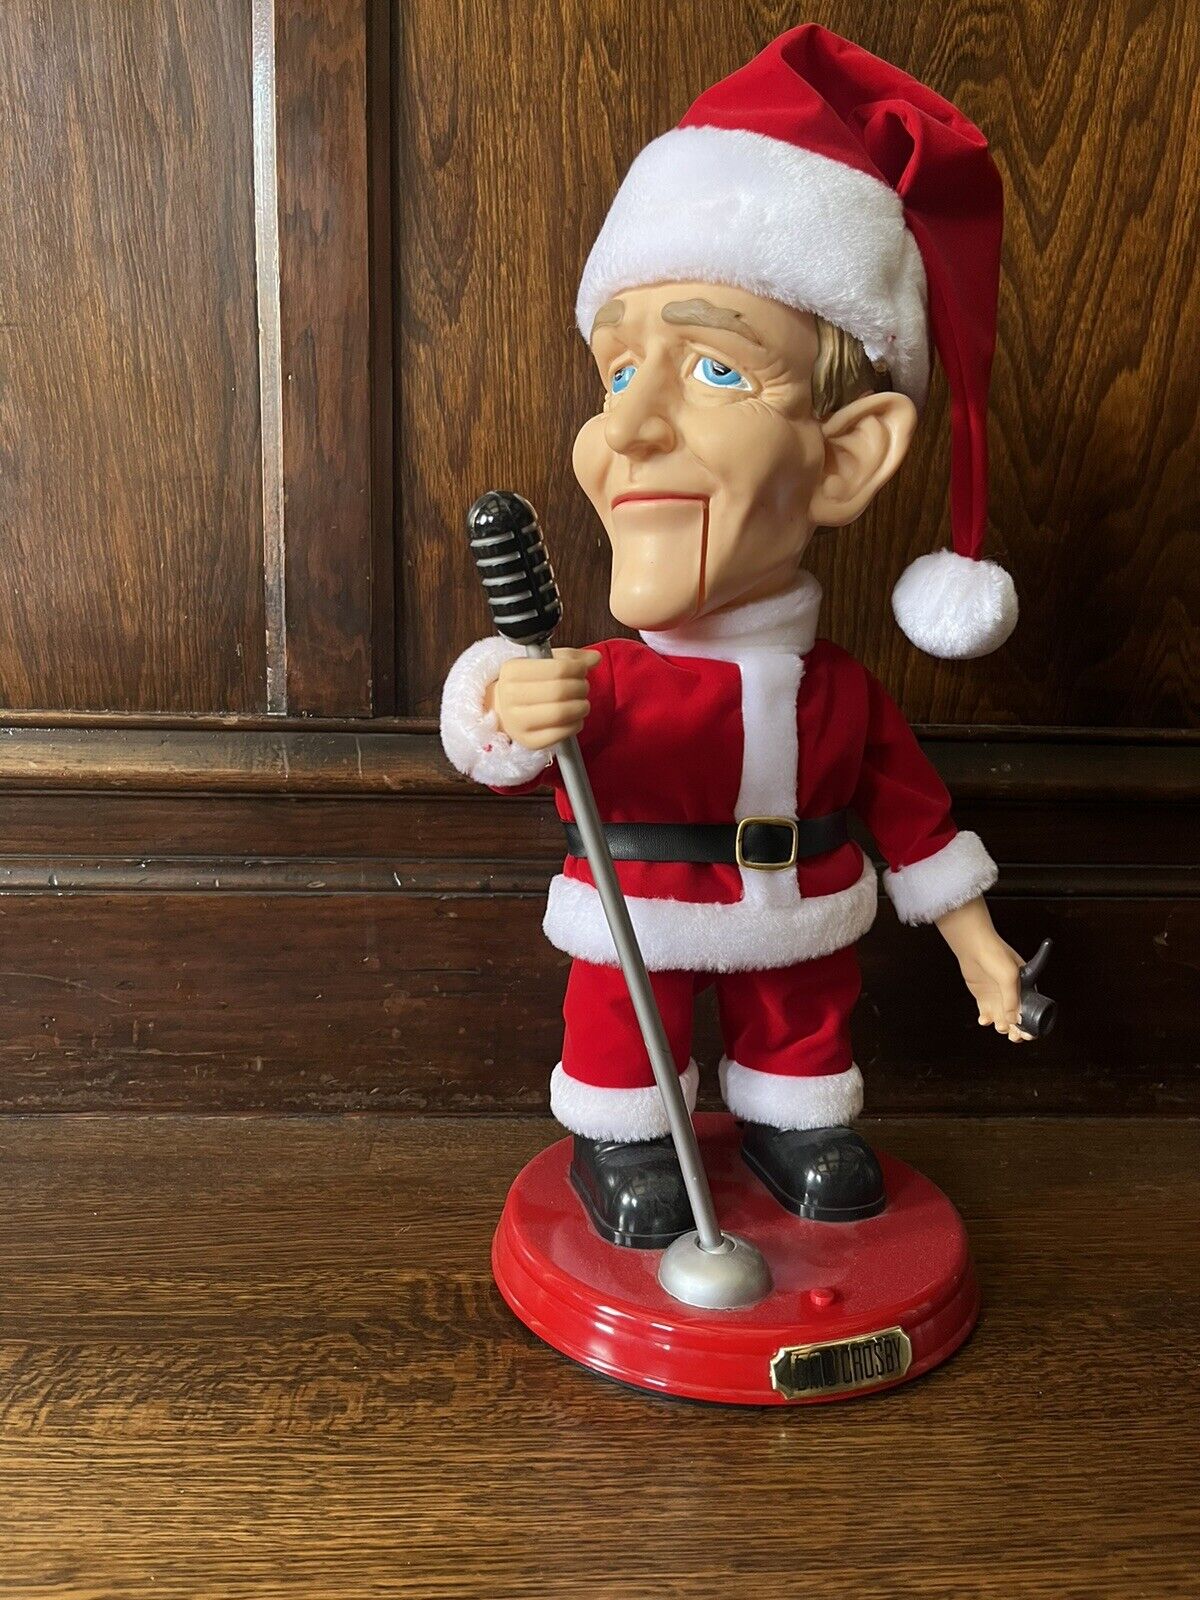 Bing Crosby Singing Sings Christmas Songs Santa Claus Animated Doll Figure 